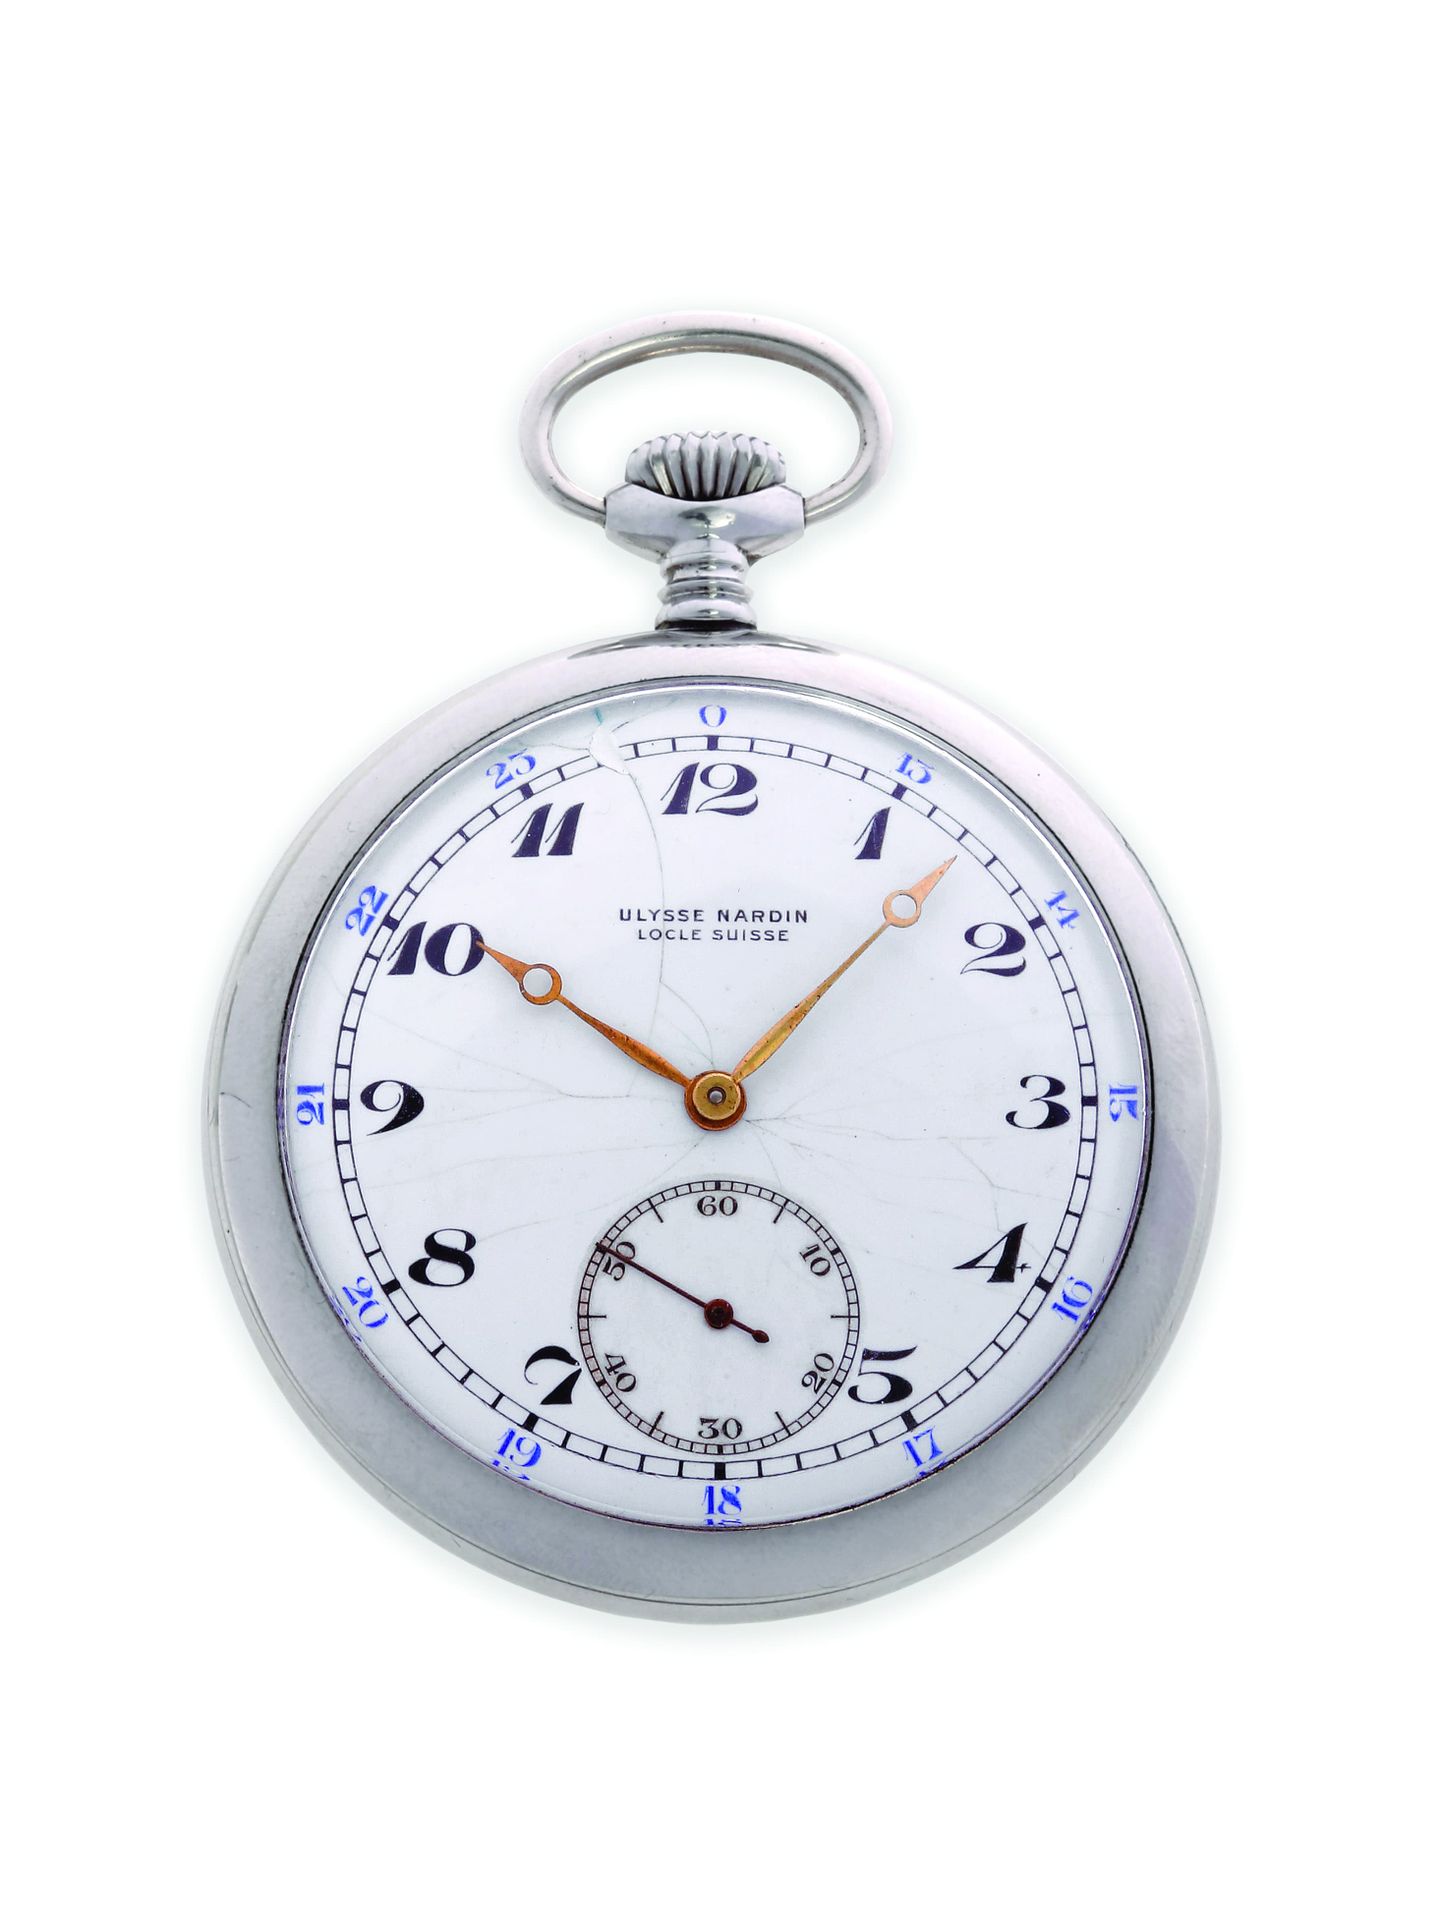 ULYSSE NARDIN Clásico
Reloj de bolsillo en plata de 900 milésimas con movimiento&hellip;